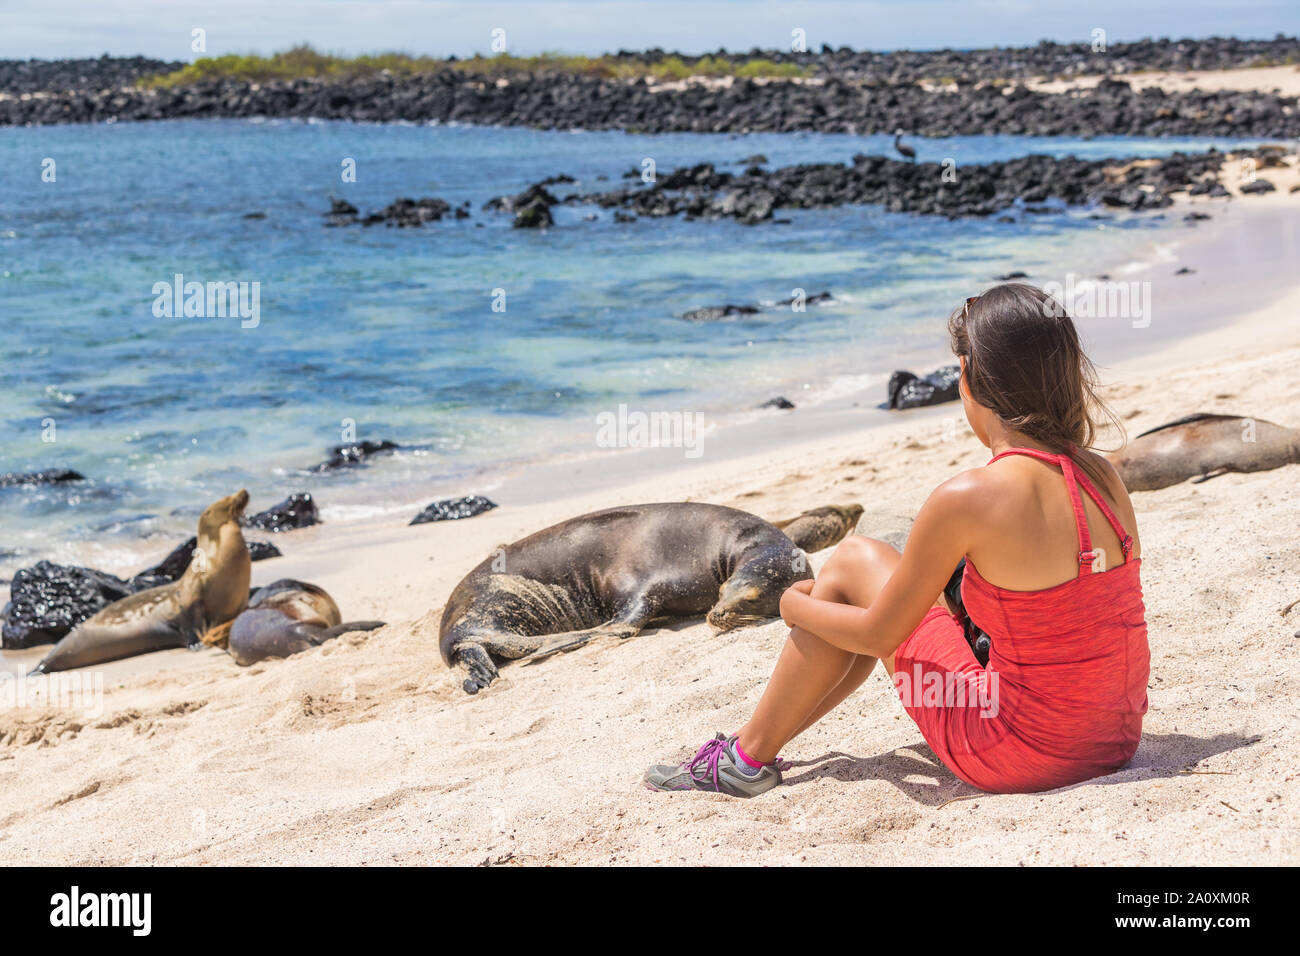 Le Galapagos tourist godendo la fauna selvatica in natura cercando seduta da molti Galapagos i leoni di mare su una nave da crociera viaggi avventura vacanze vacanze, Mann (spiaggia Playa Mann), San Cristobal, Galapagos, Ecuador. Foto Stock